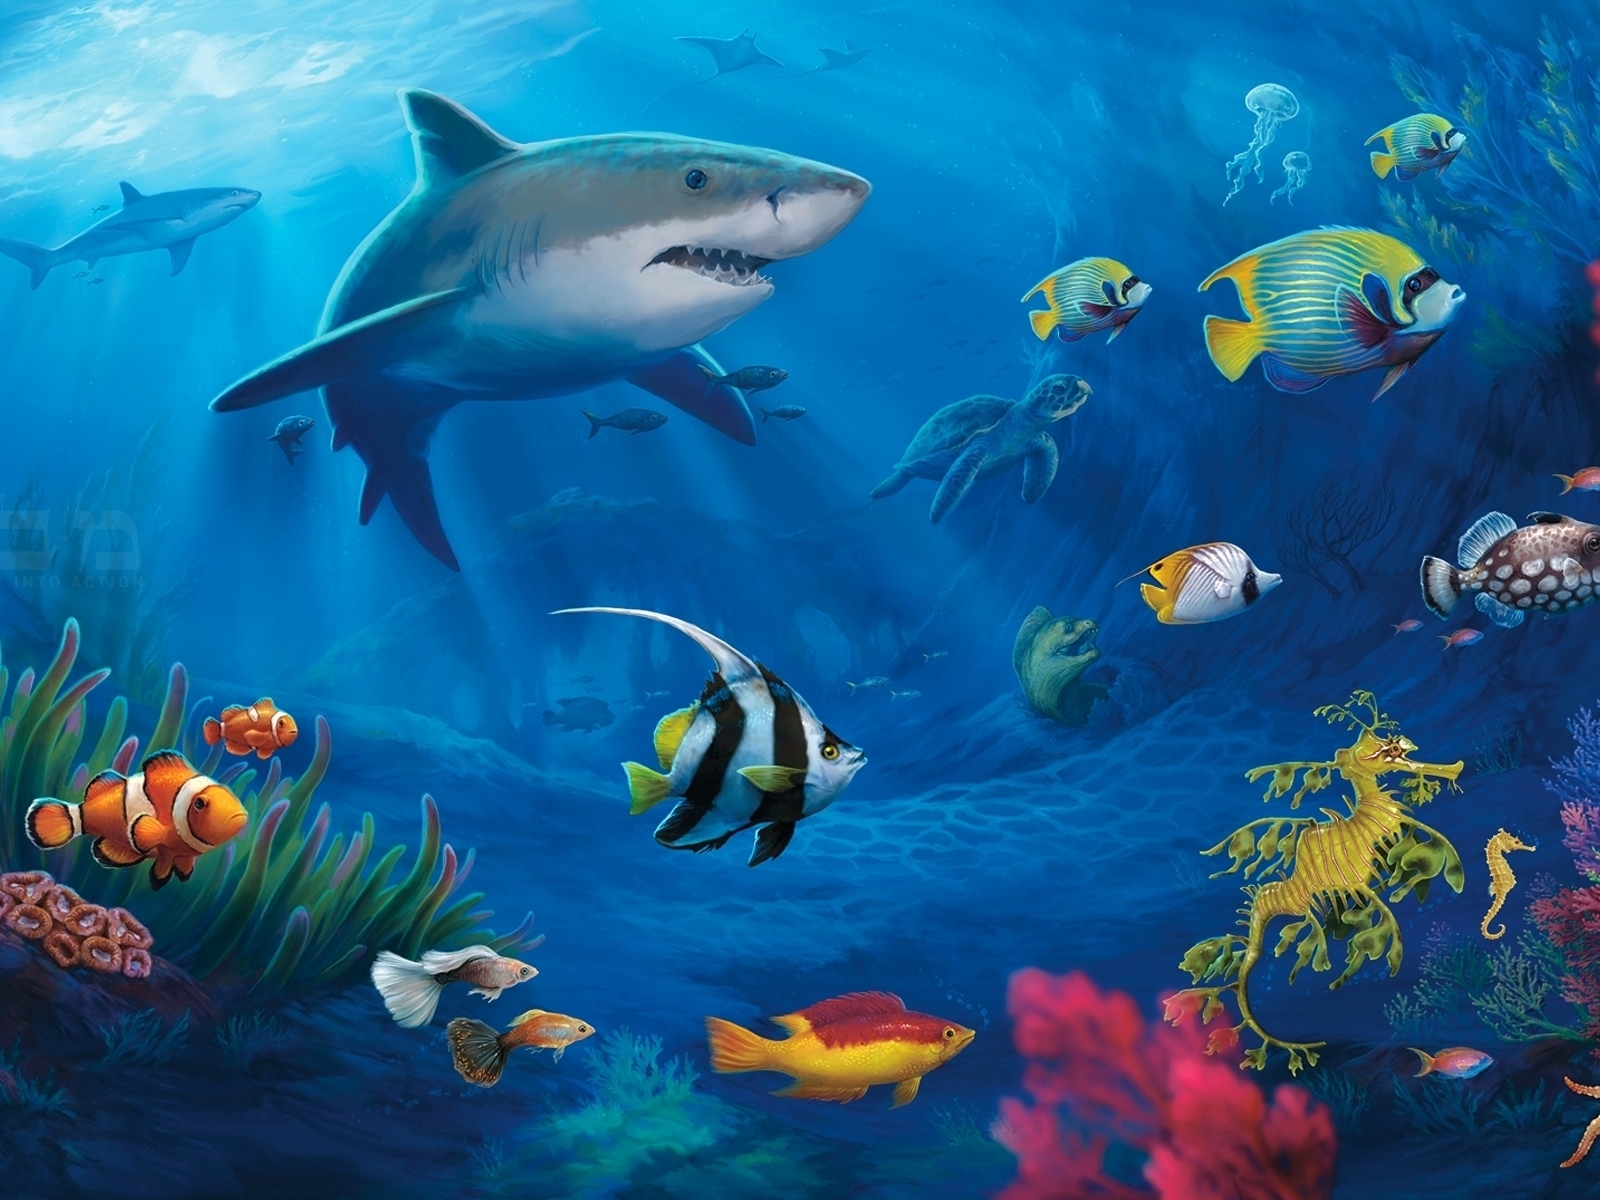 Underwater World Live for 1600 x 1200 resolution